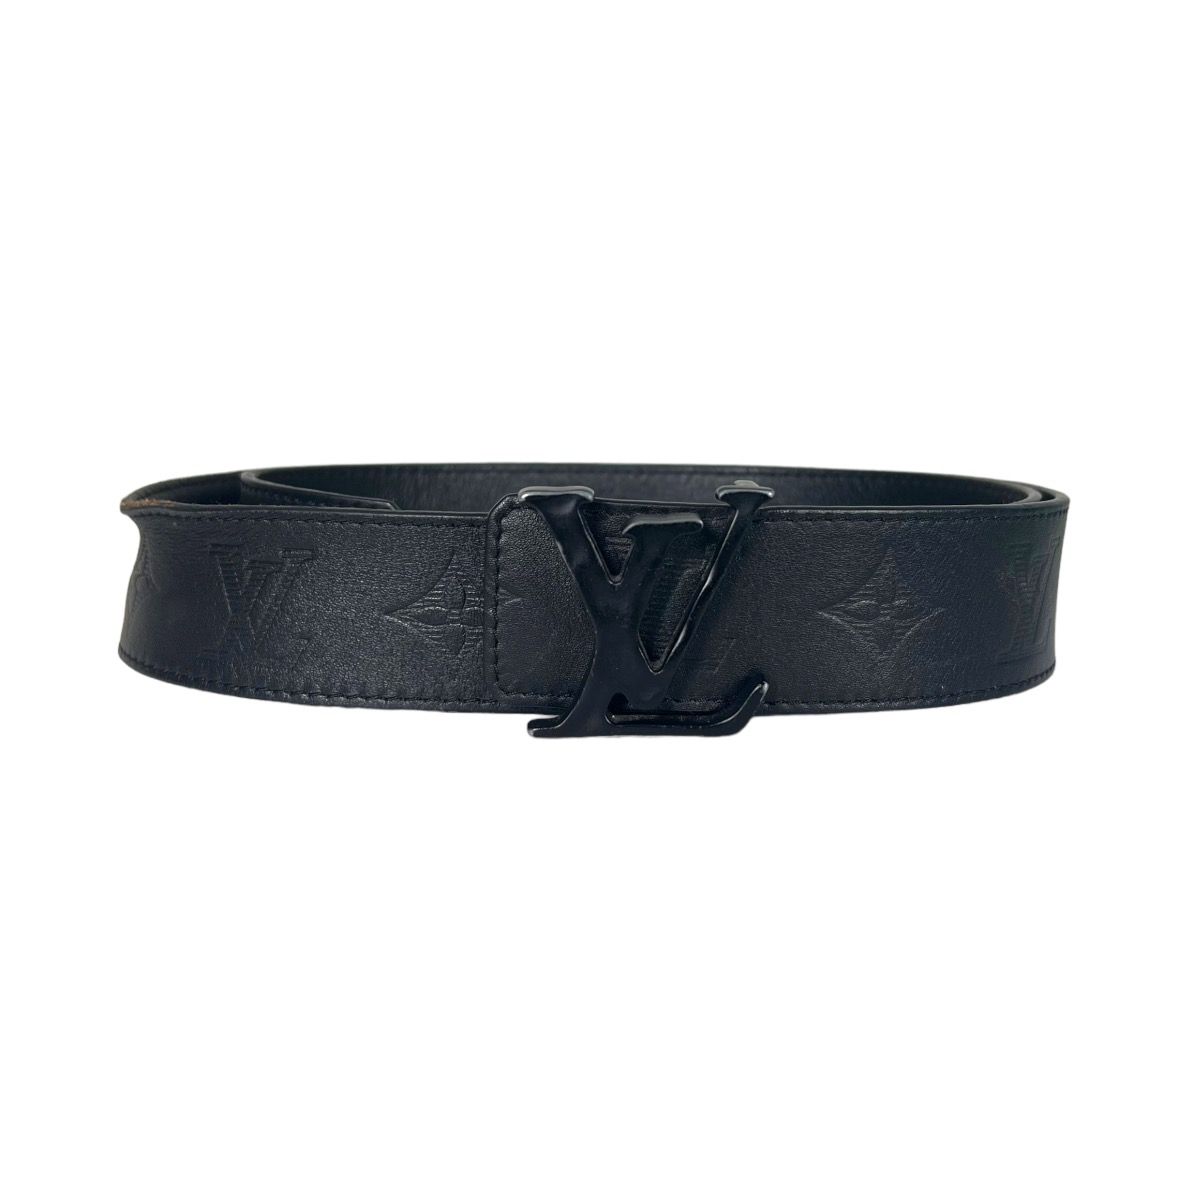 Authenticated Used Rare limited edition Louis Vuitton LOUIS VUITTON leather  belt N1002 Sunture LV 100LV 85 size 80-90cm black men's 